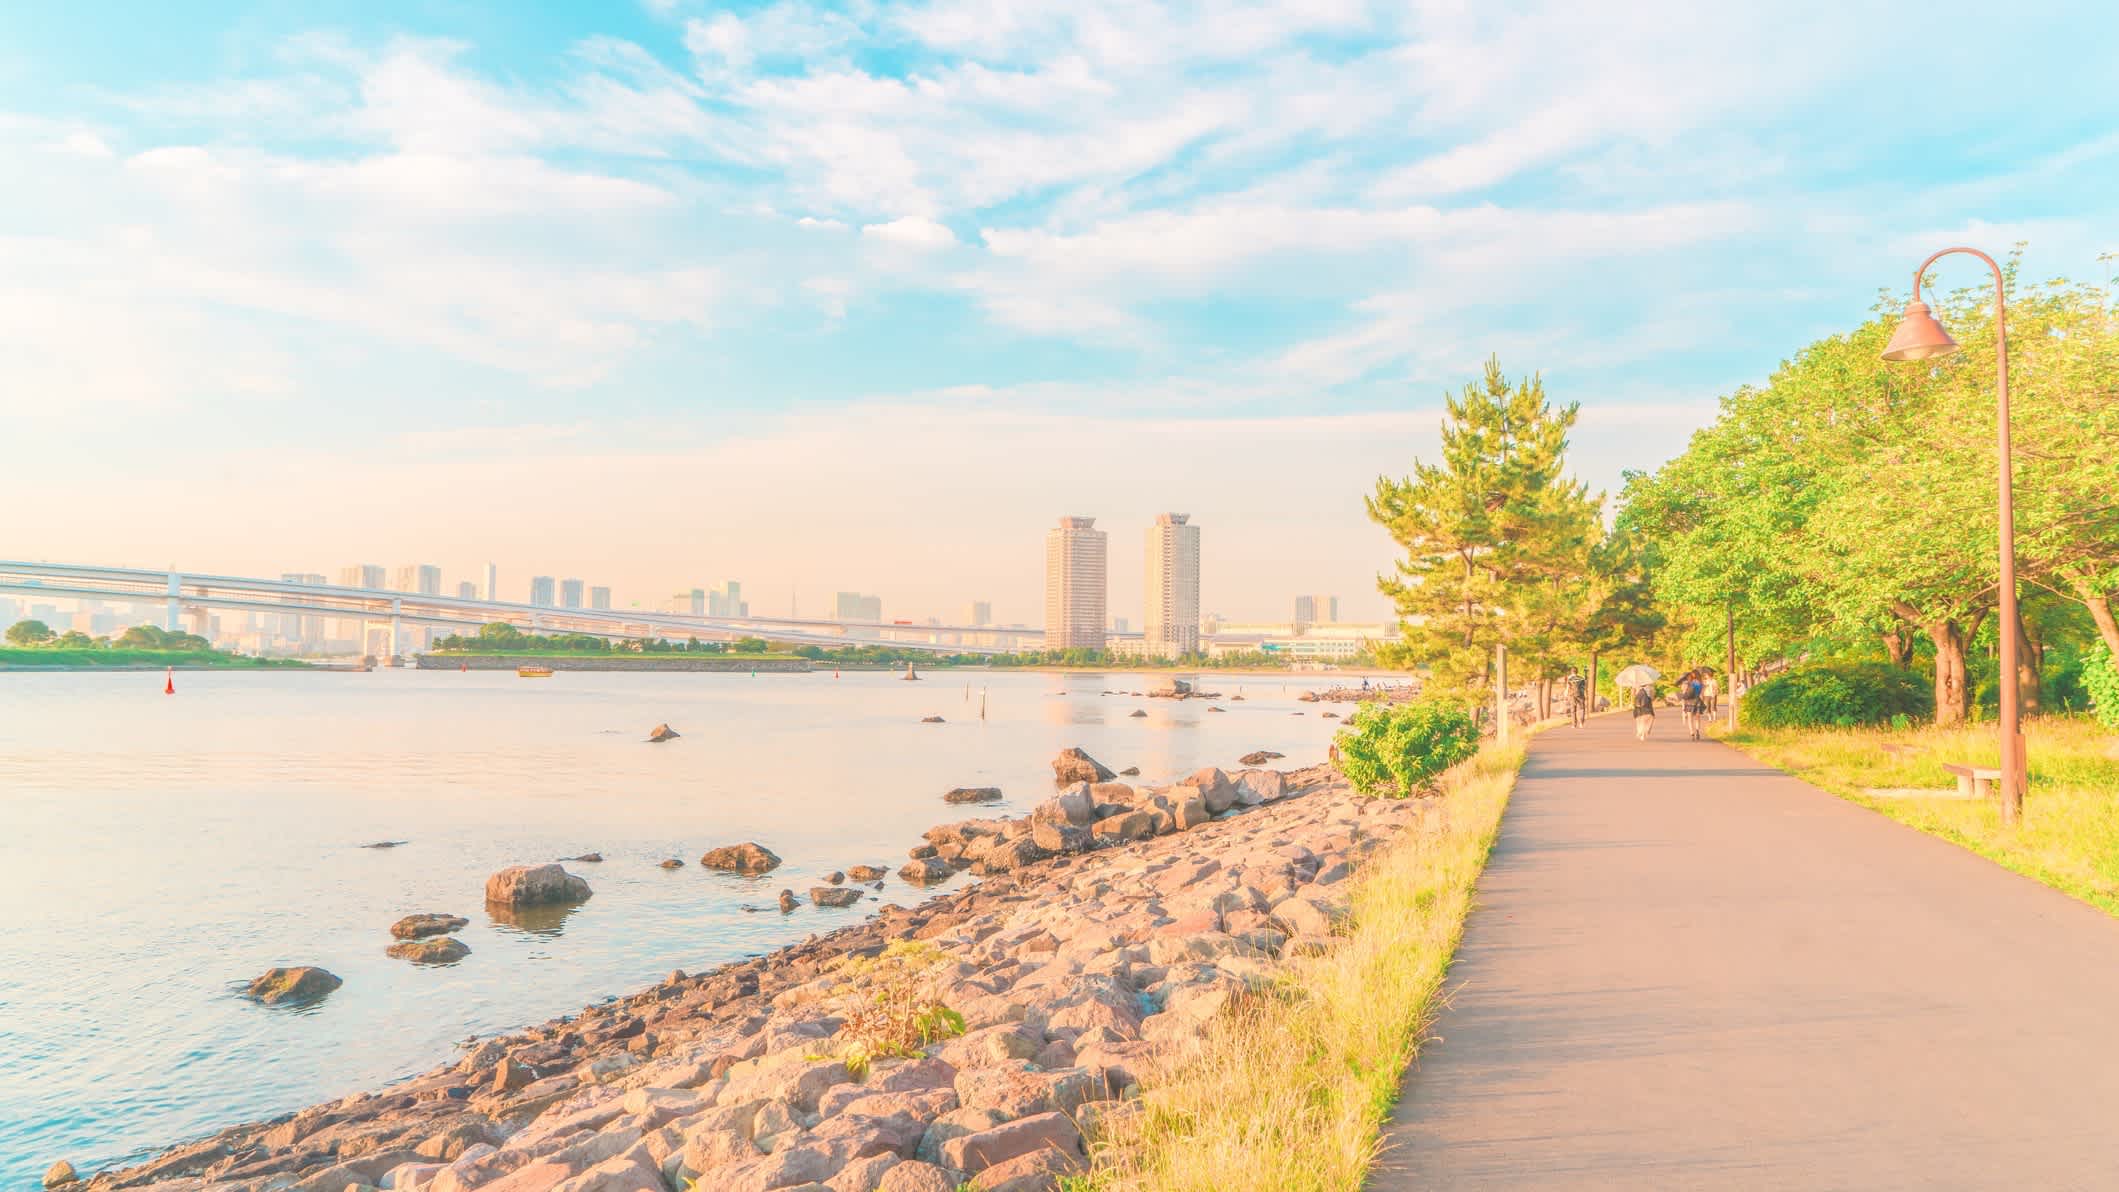 Spazierweg am Wasser von Odaiba, Tokyo Bay, Tokio, Japan bei sonnigem Wetter und mit Blick auf die Stadt sowie den Stadtpark.